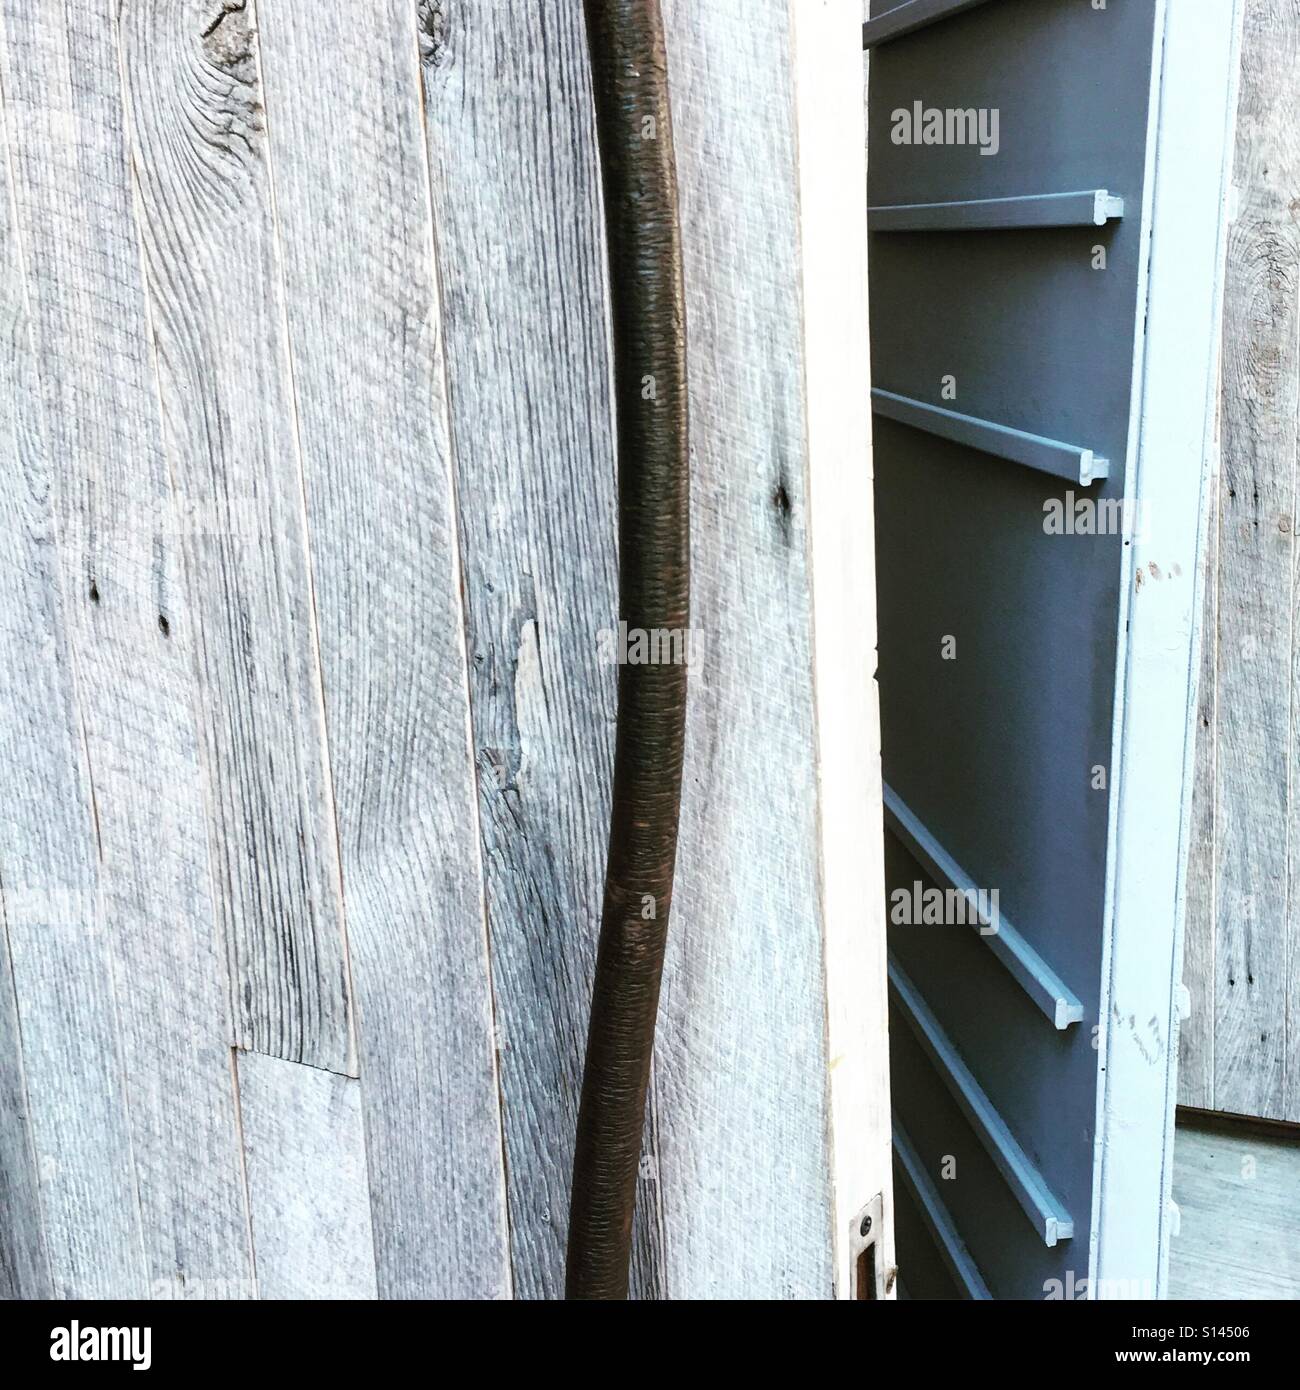 Wooden doors Stock Photo